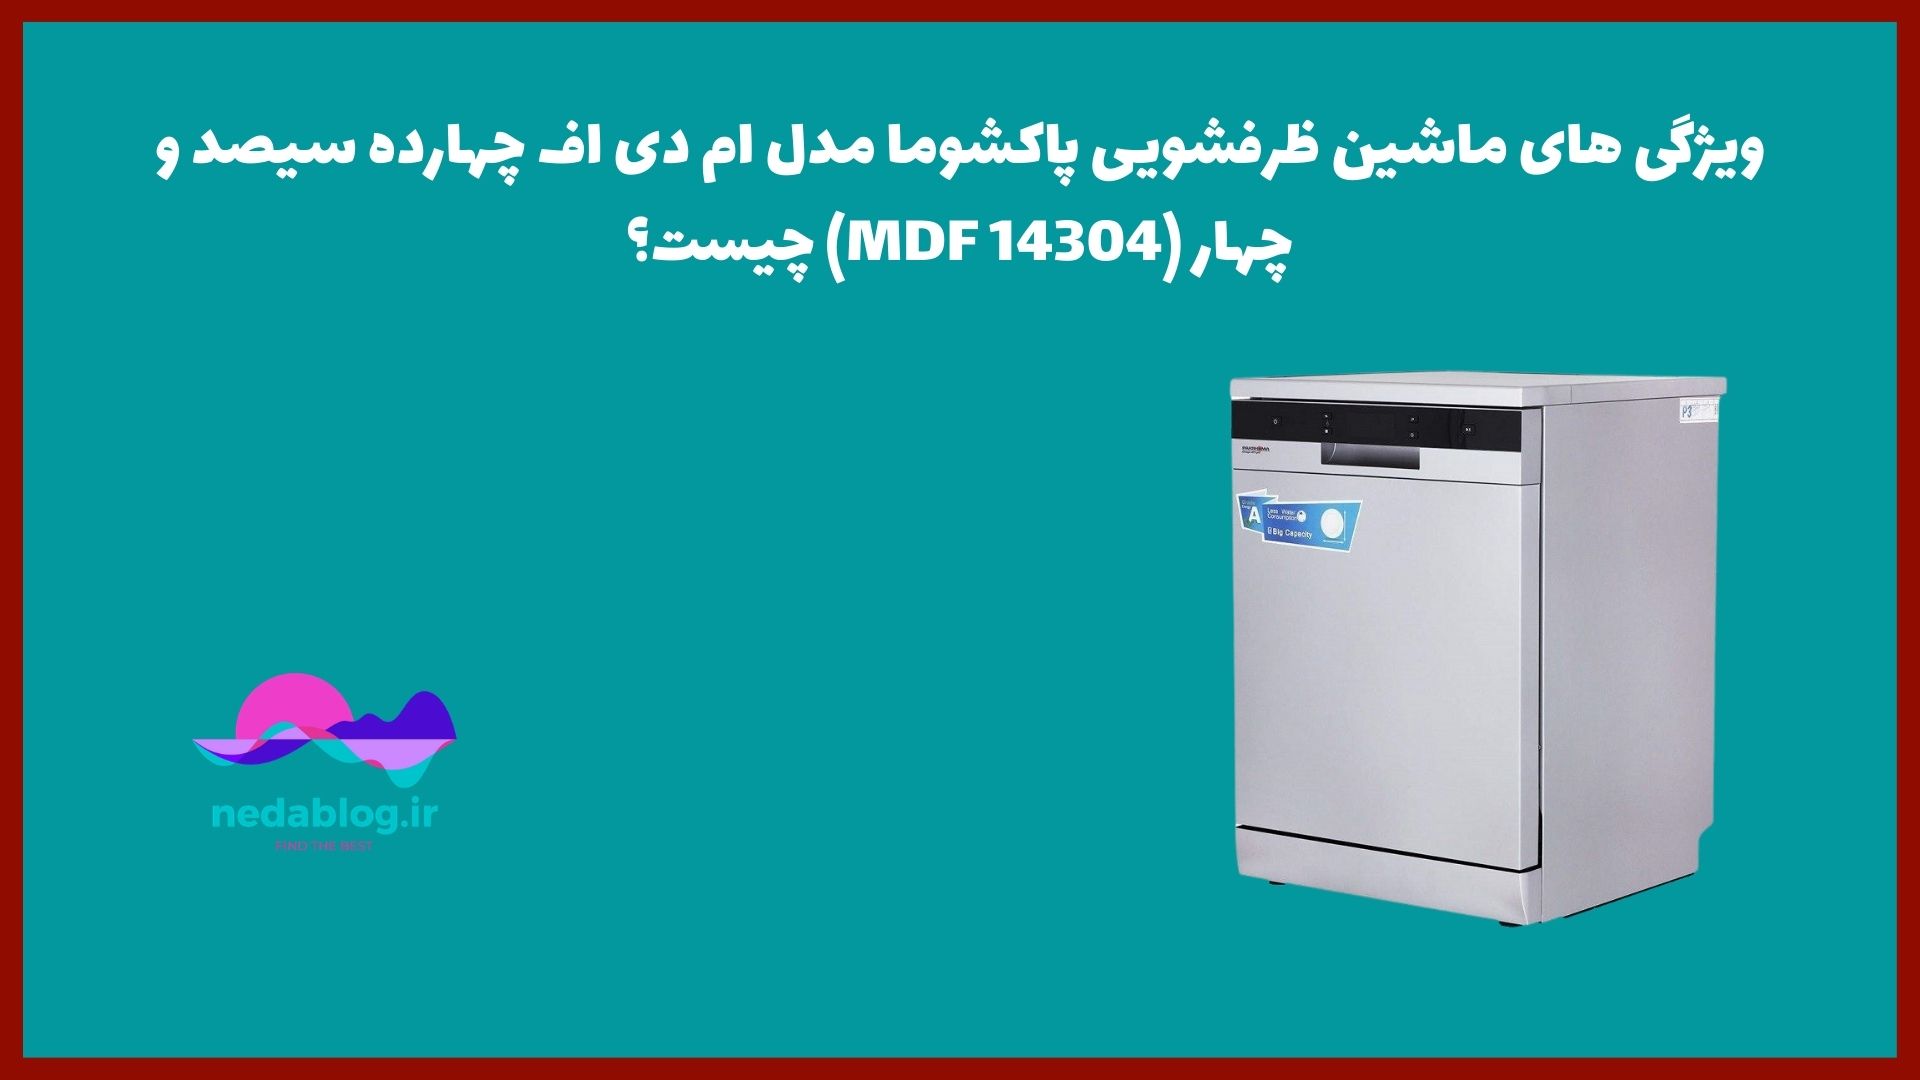 ویژگی های ماشین ظرفشویی پاکشوما مدل ام دی اف چهارده سیصد و چهار (MDF 14304) چیست؟